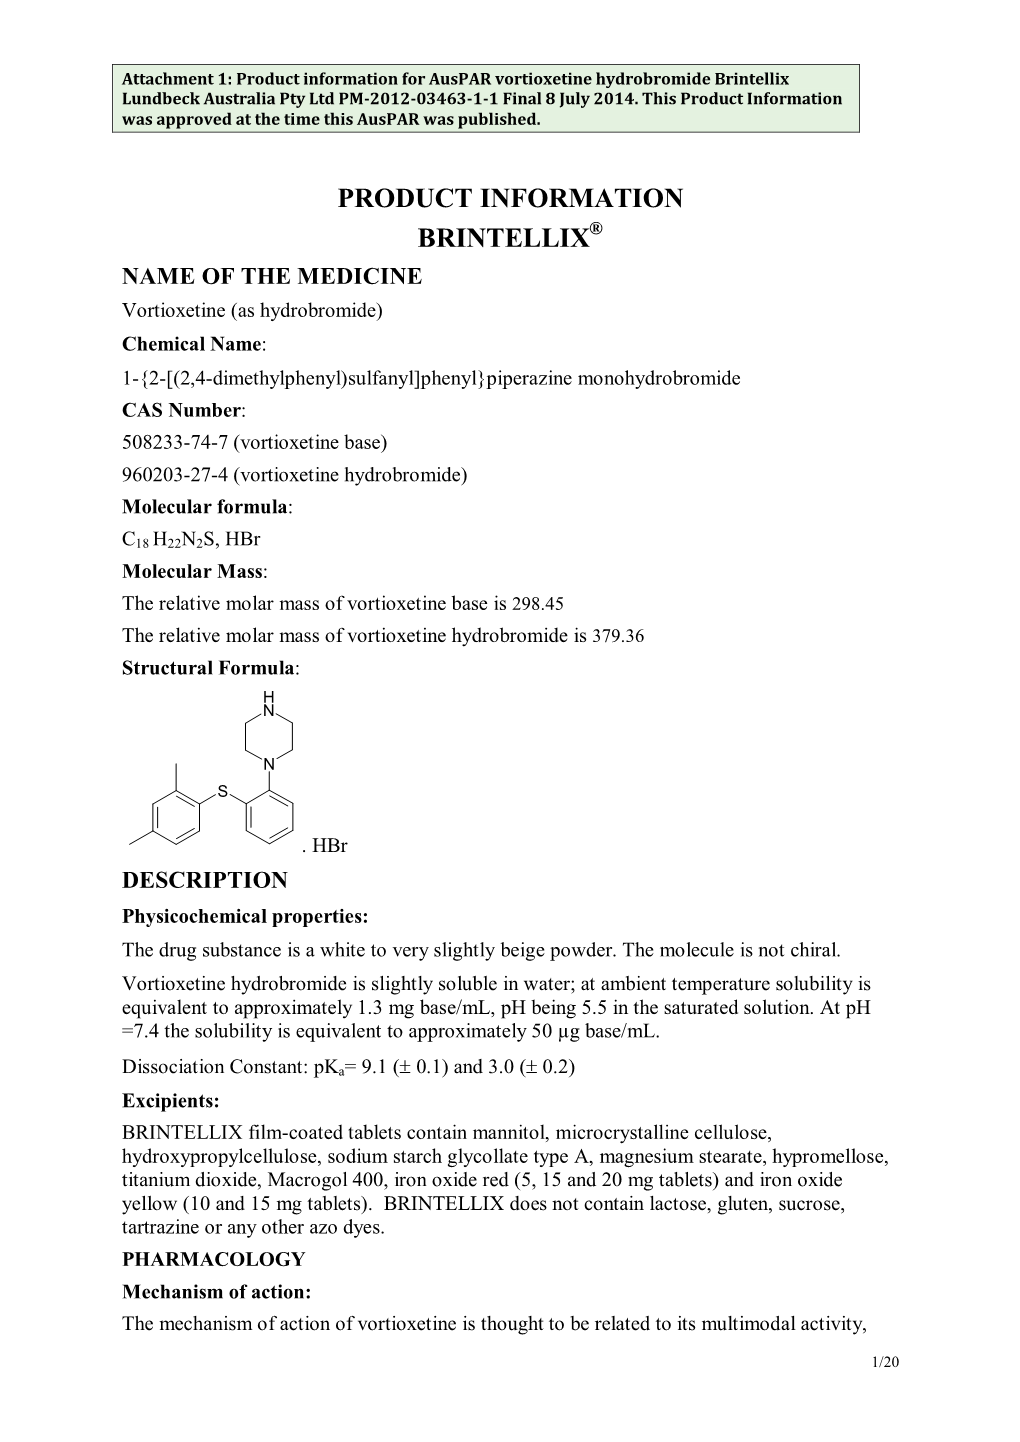 Attachment 1. Product Information for Vortioxetine Hydrobromide Brintellix